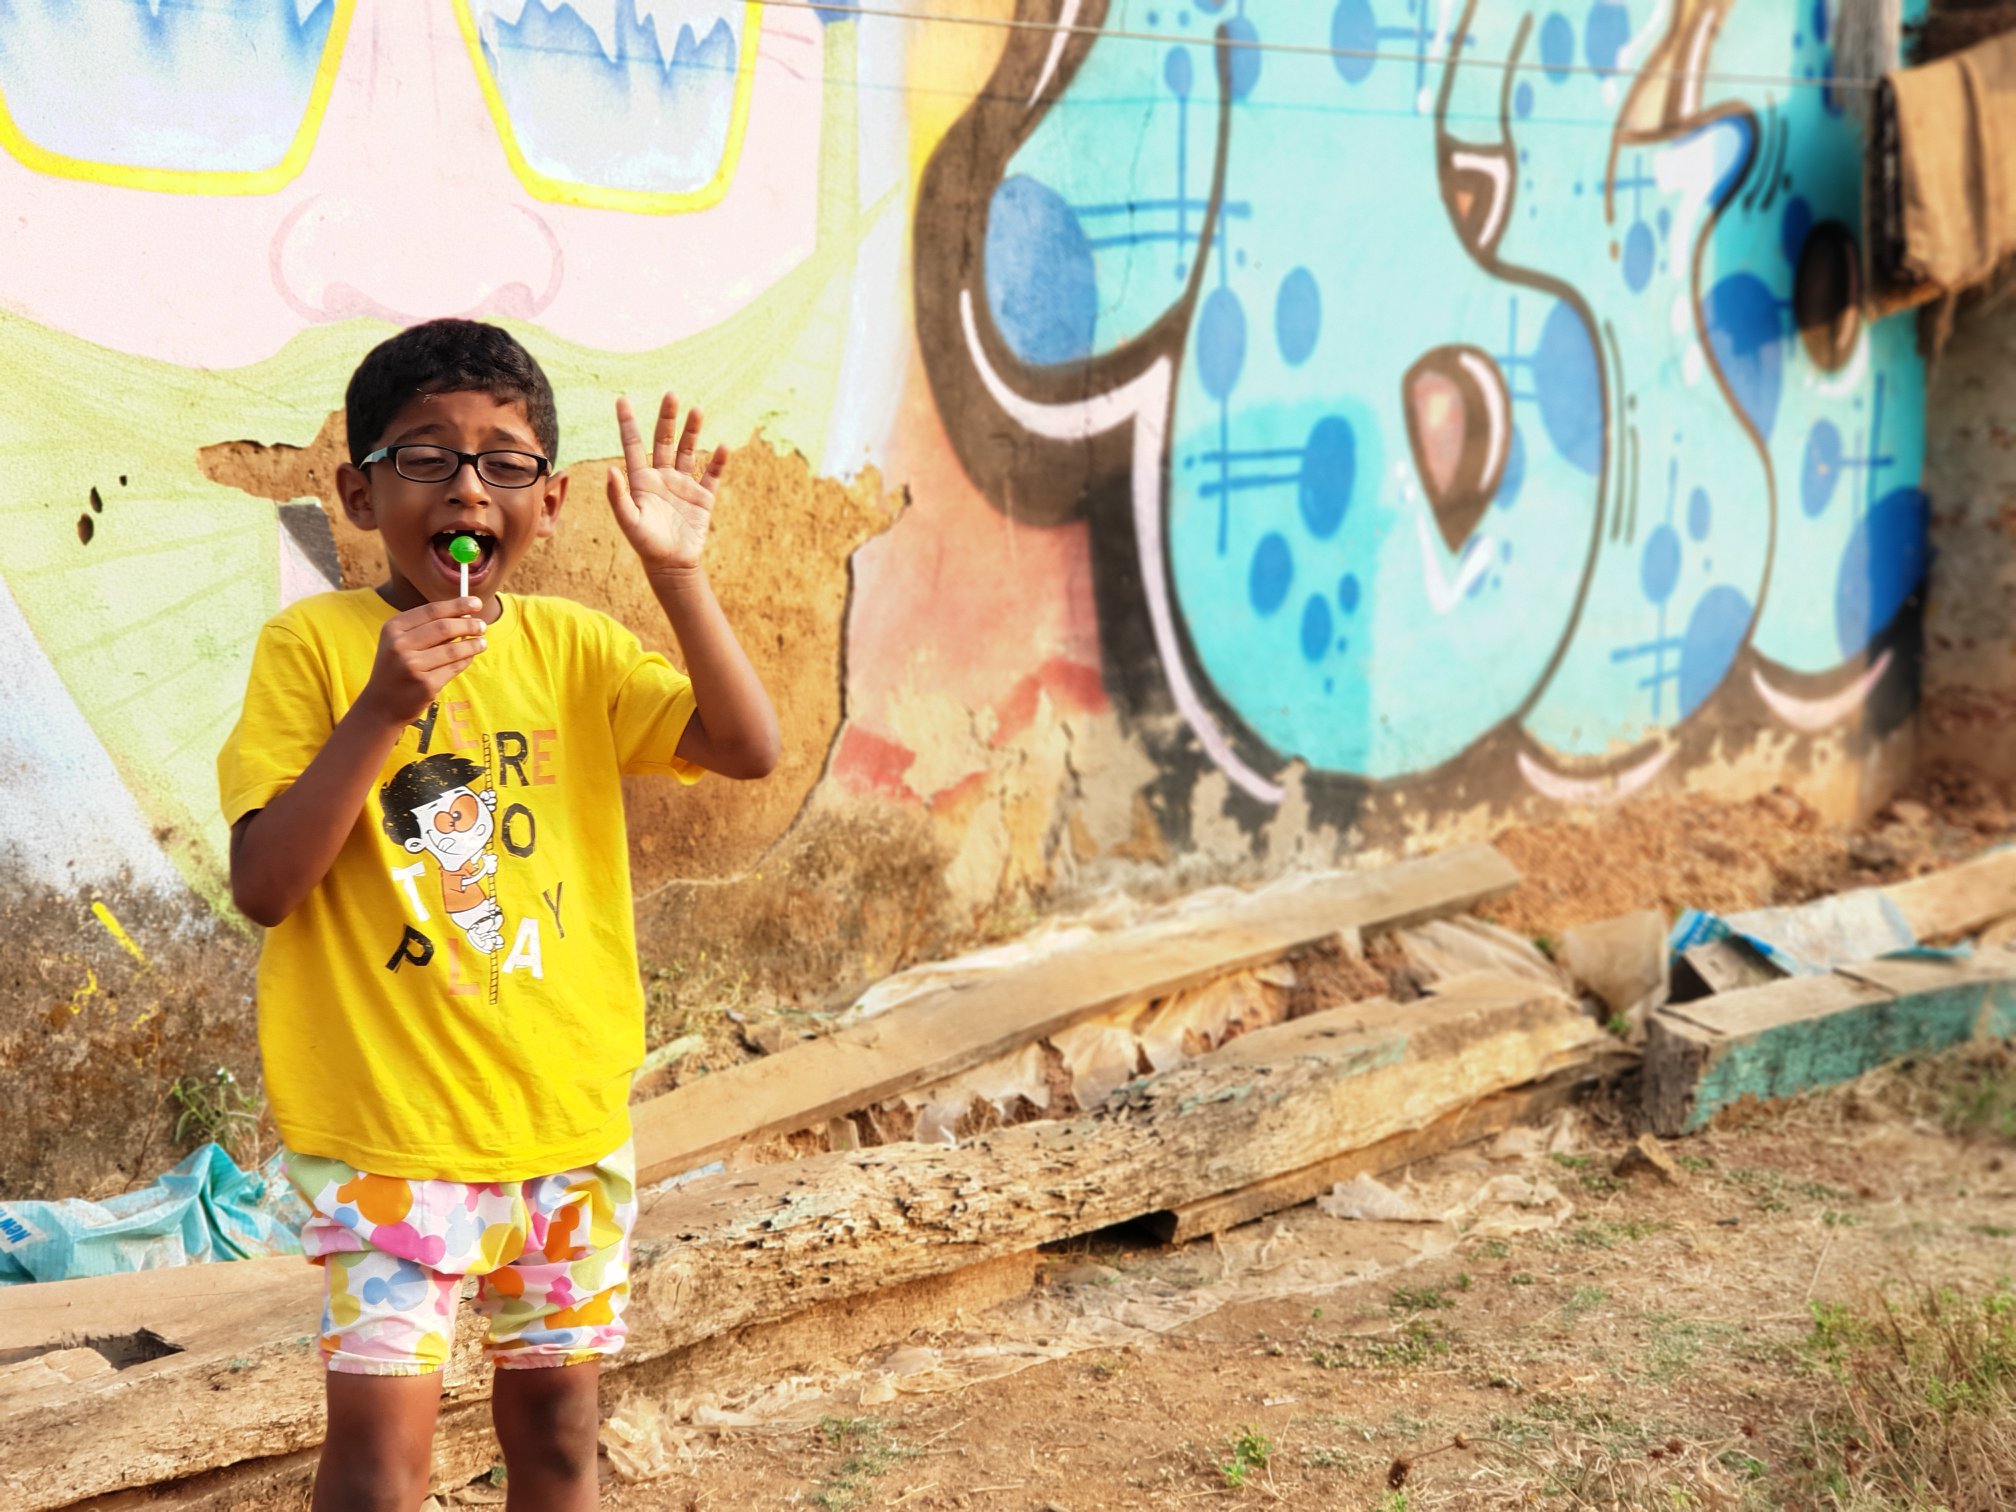 Nandu in front of a graffiti wall in Chaudi-South Goa